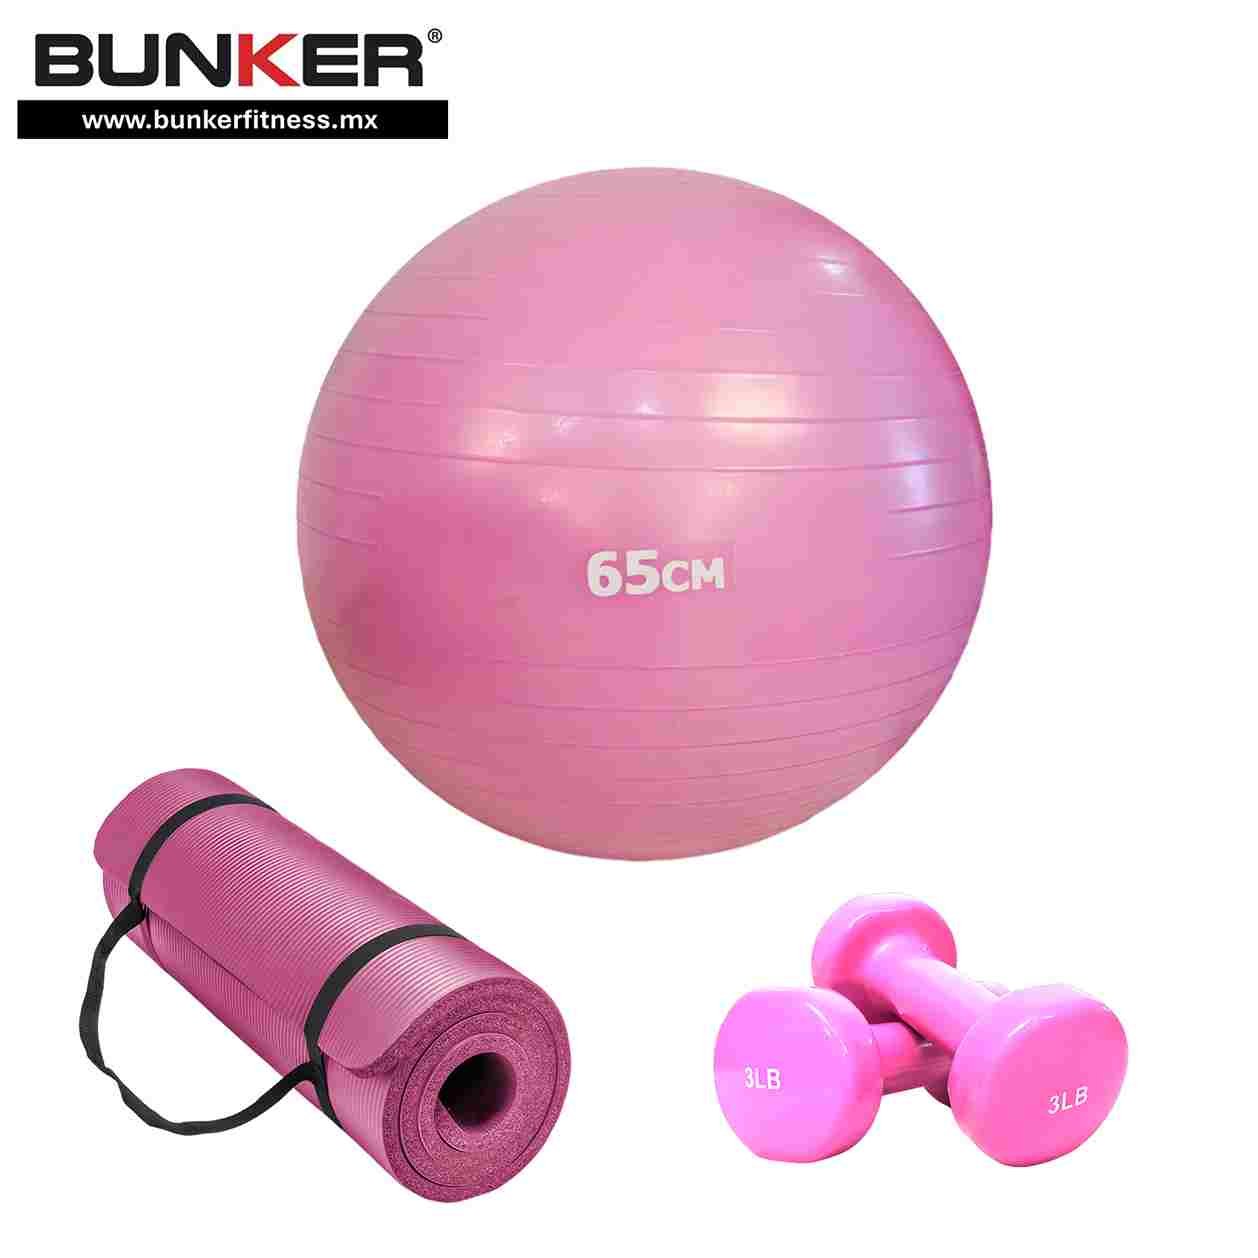 pelota de pilates y yoga rosa de 65cm con tapete y mancuernas fitness para ejercicio y gimnasio en casa bunker gym bunker fitness